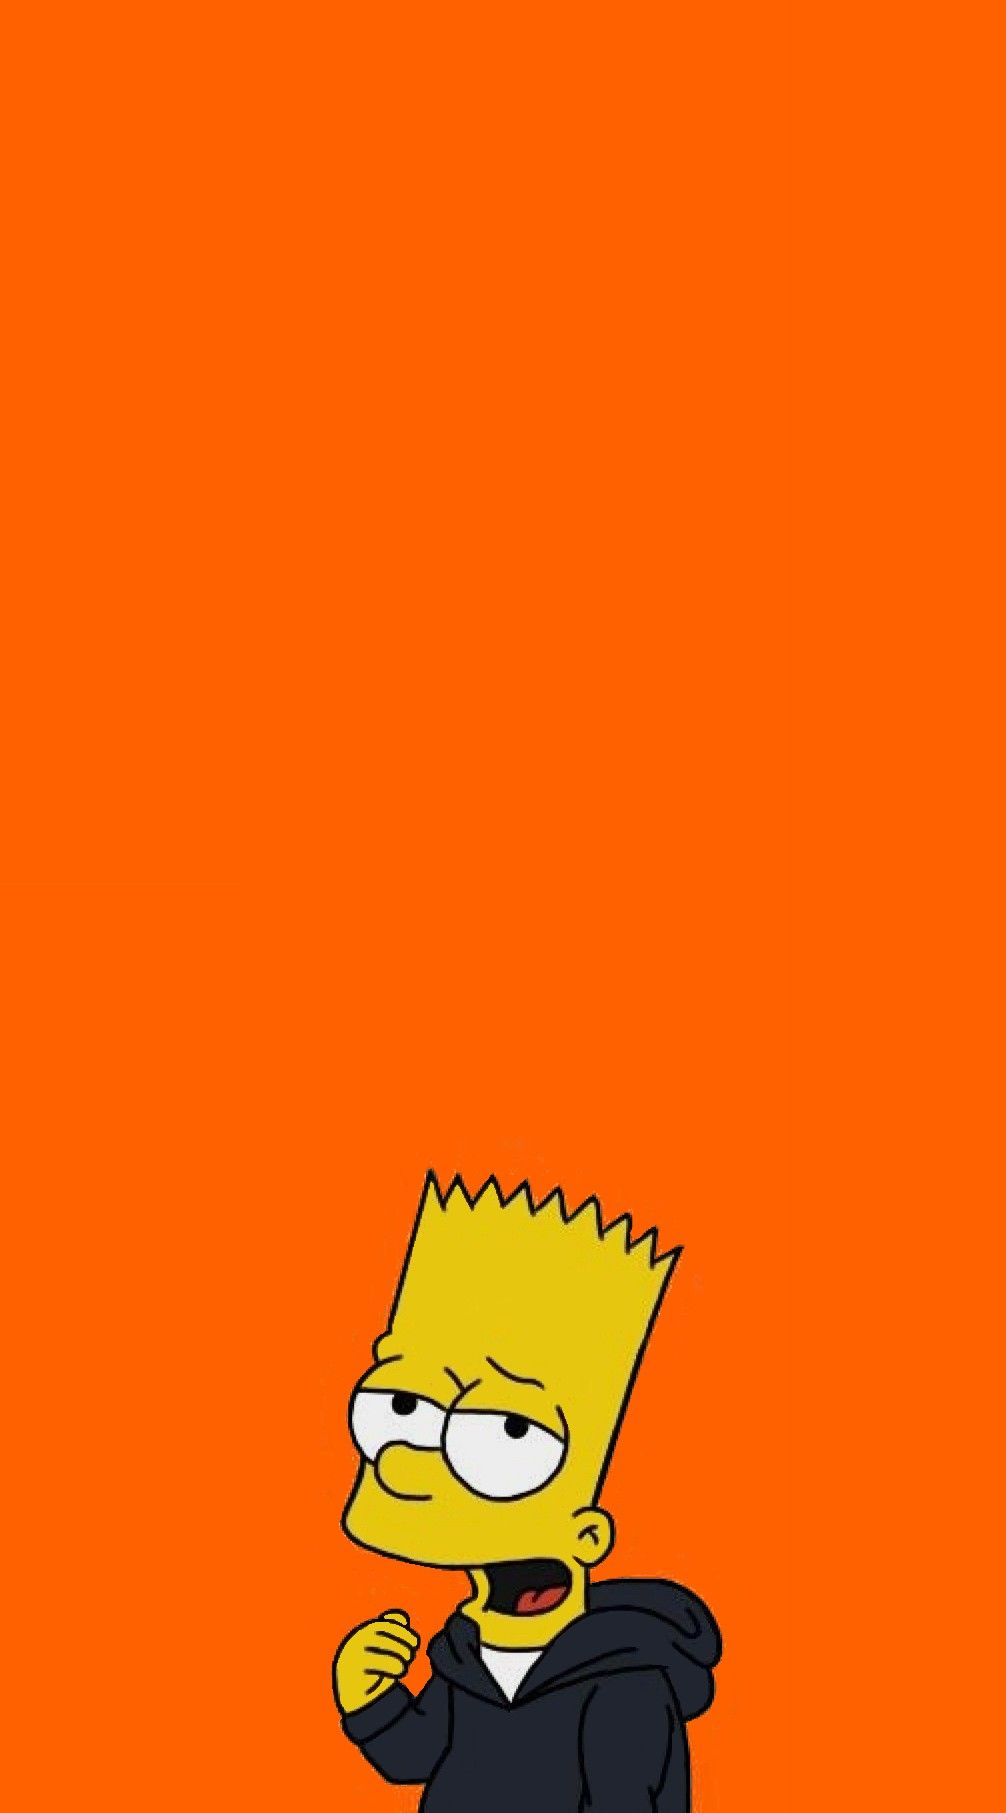 Bart Simpson Aesthetic Wallpapers - Top Những Hình Ảnh Đẹp